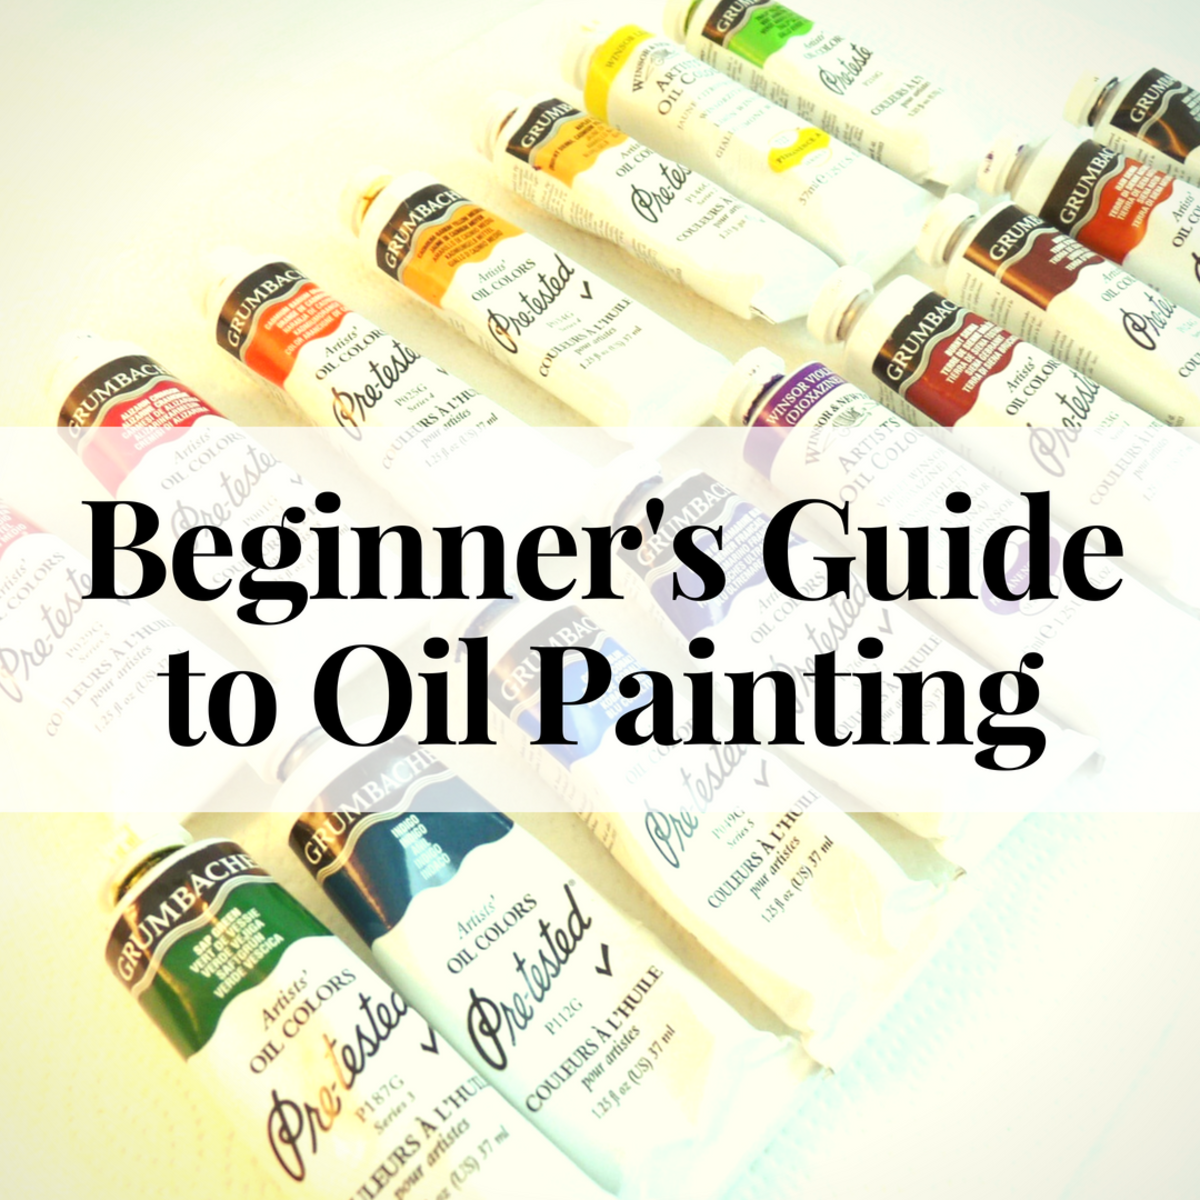 Grumbacher Oil Paint Color Chart